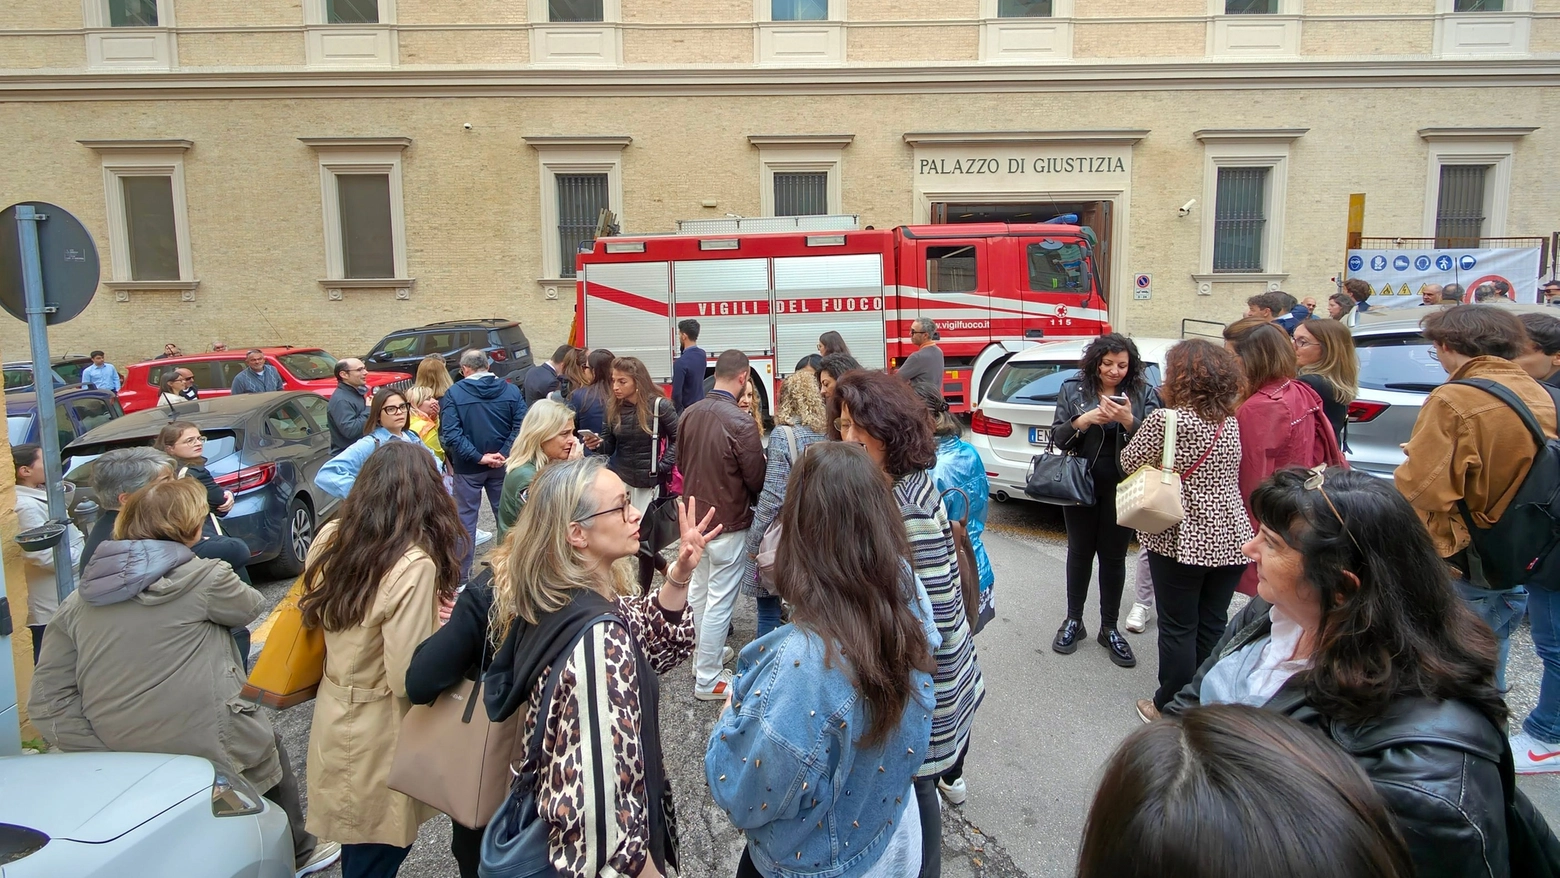 Principio di incendio in tribunale ad Ancona, tutti fuori (foto Emma)